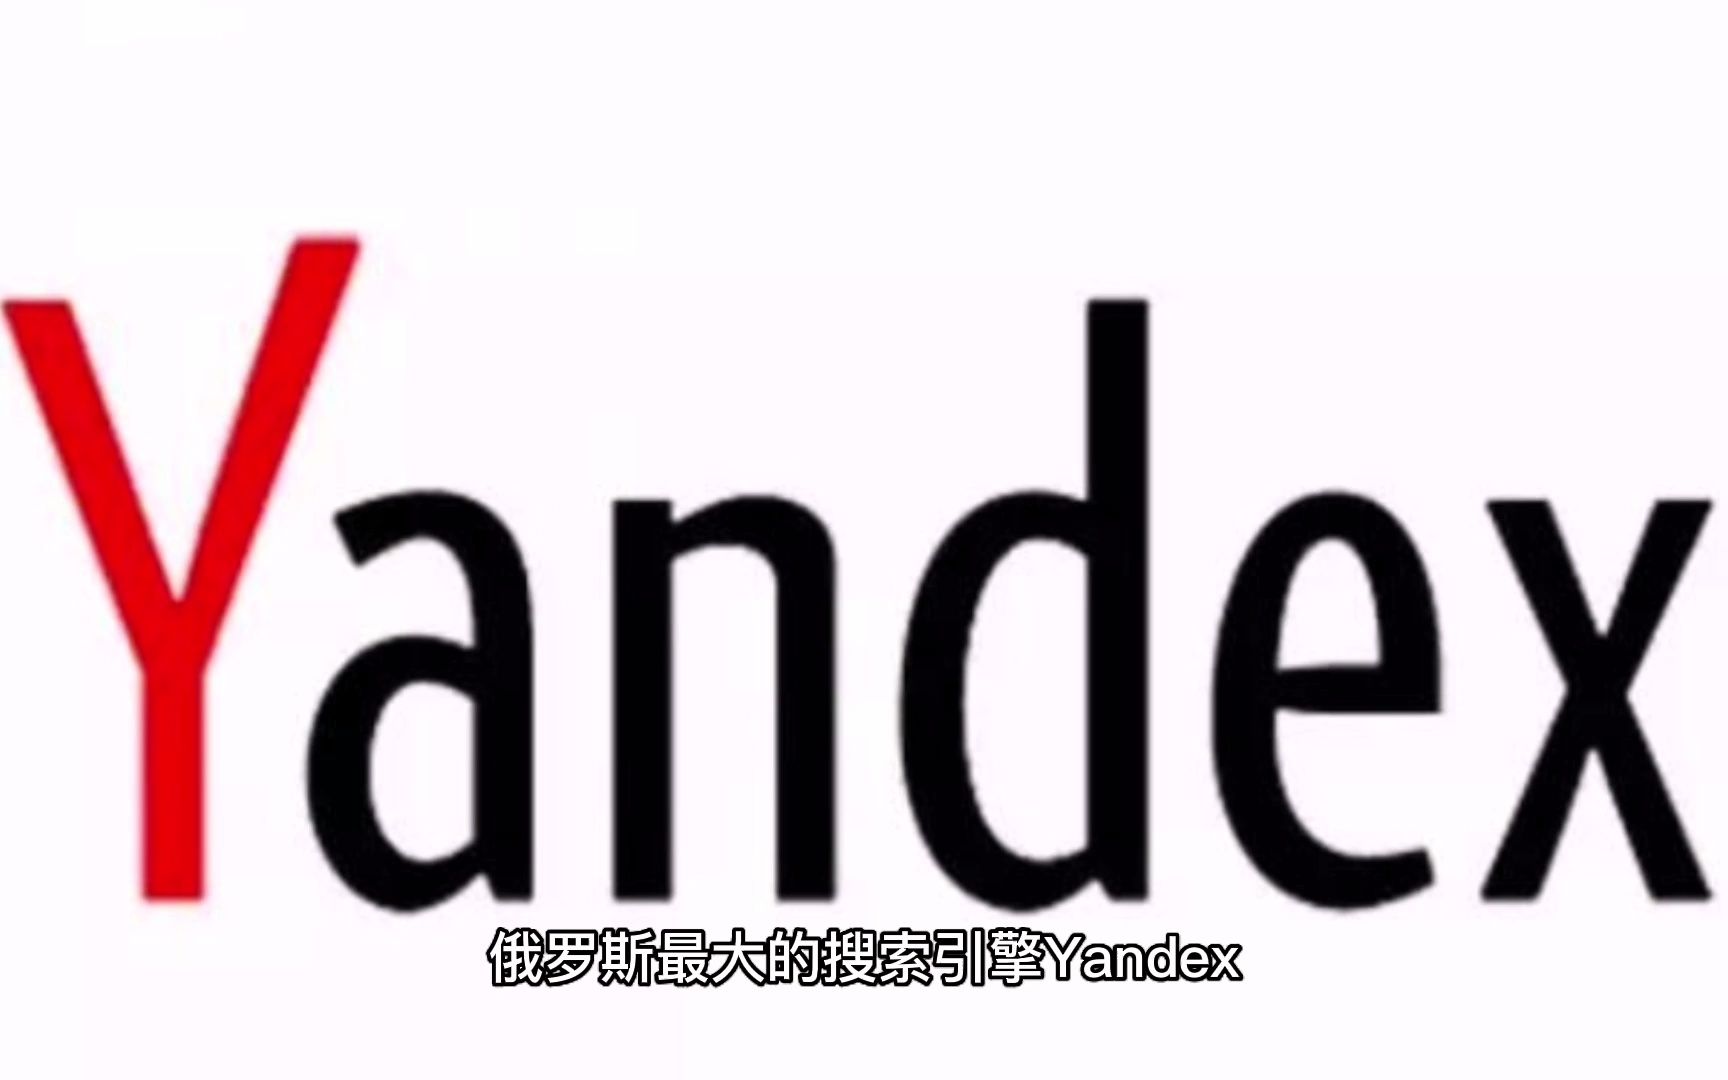 俄罗斯最大的搜索引擎Yandex